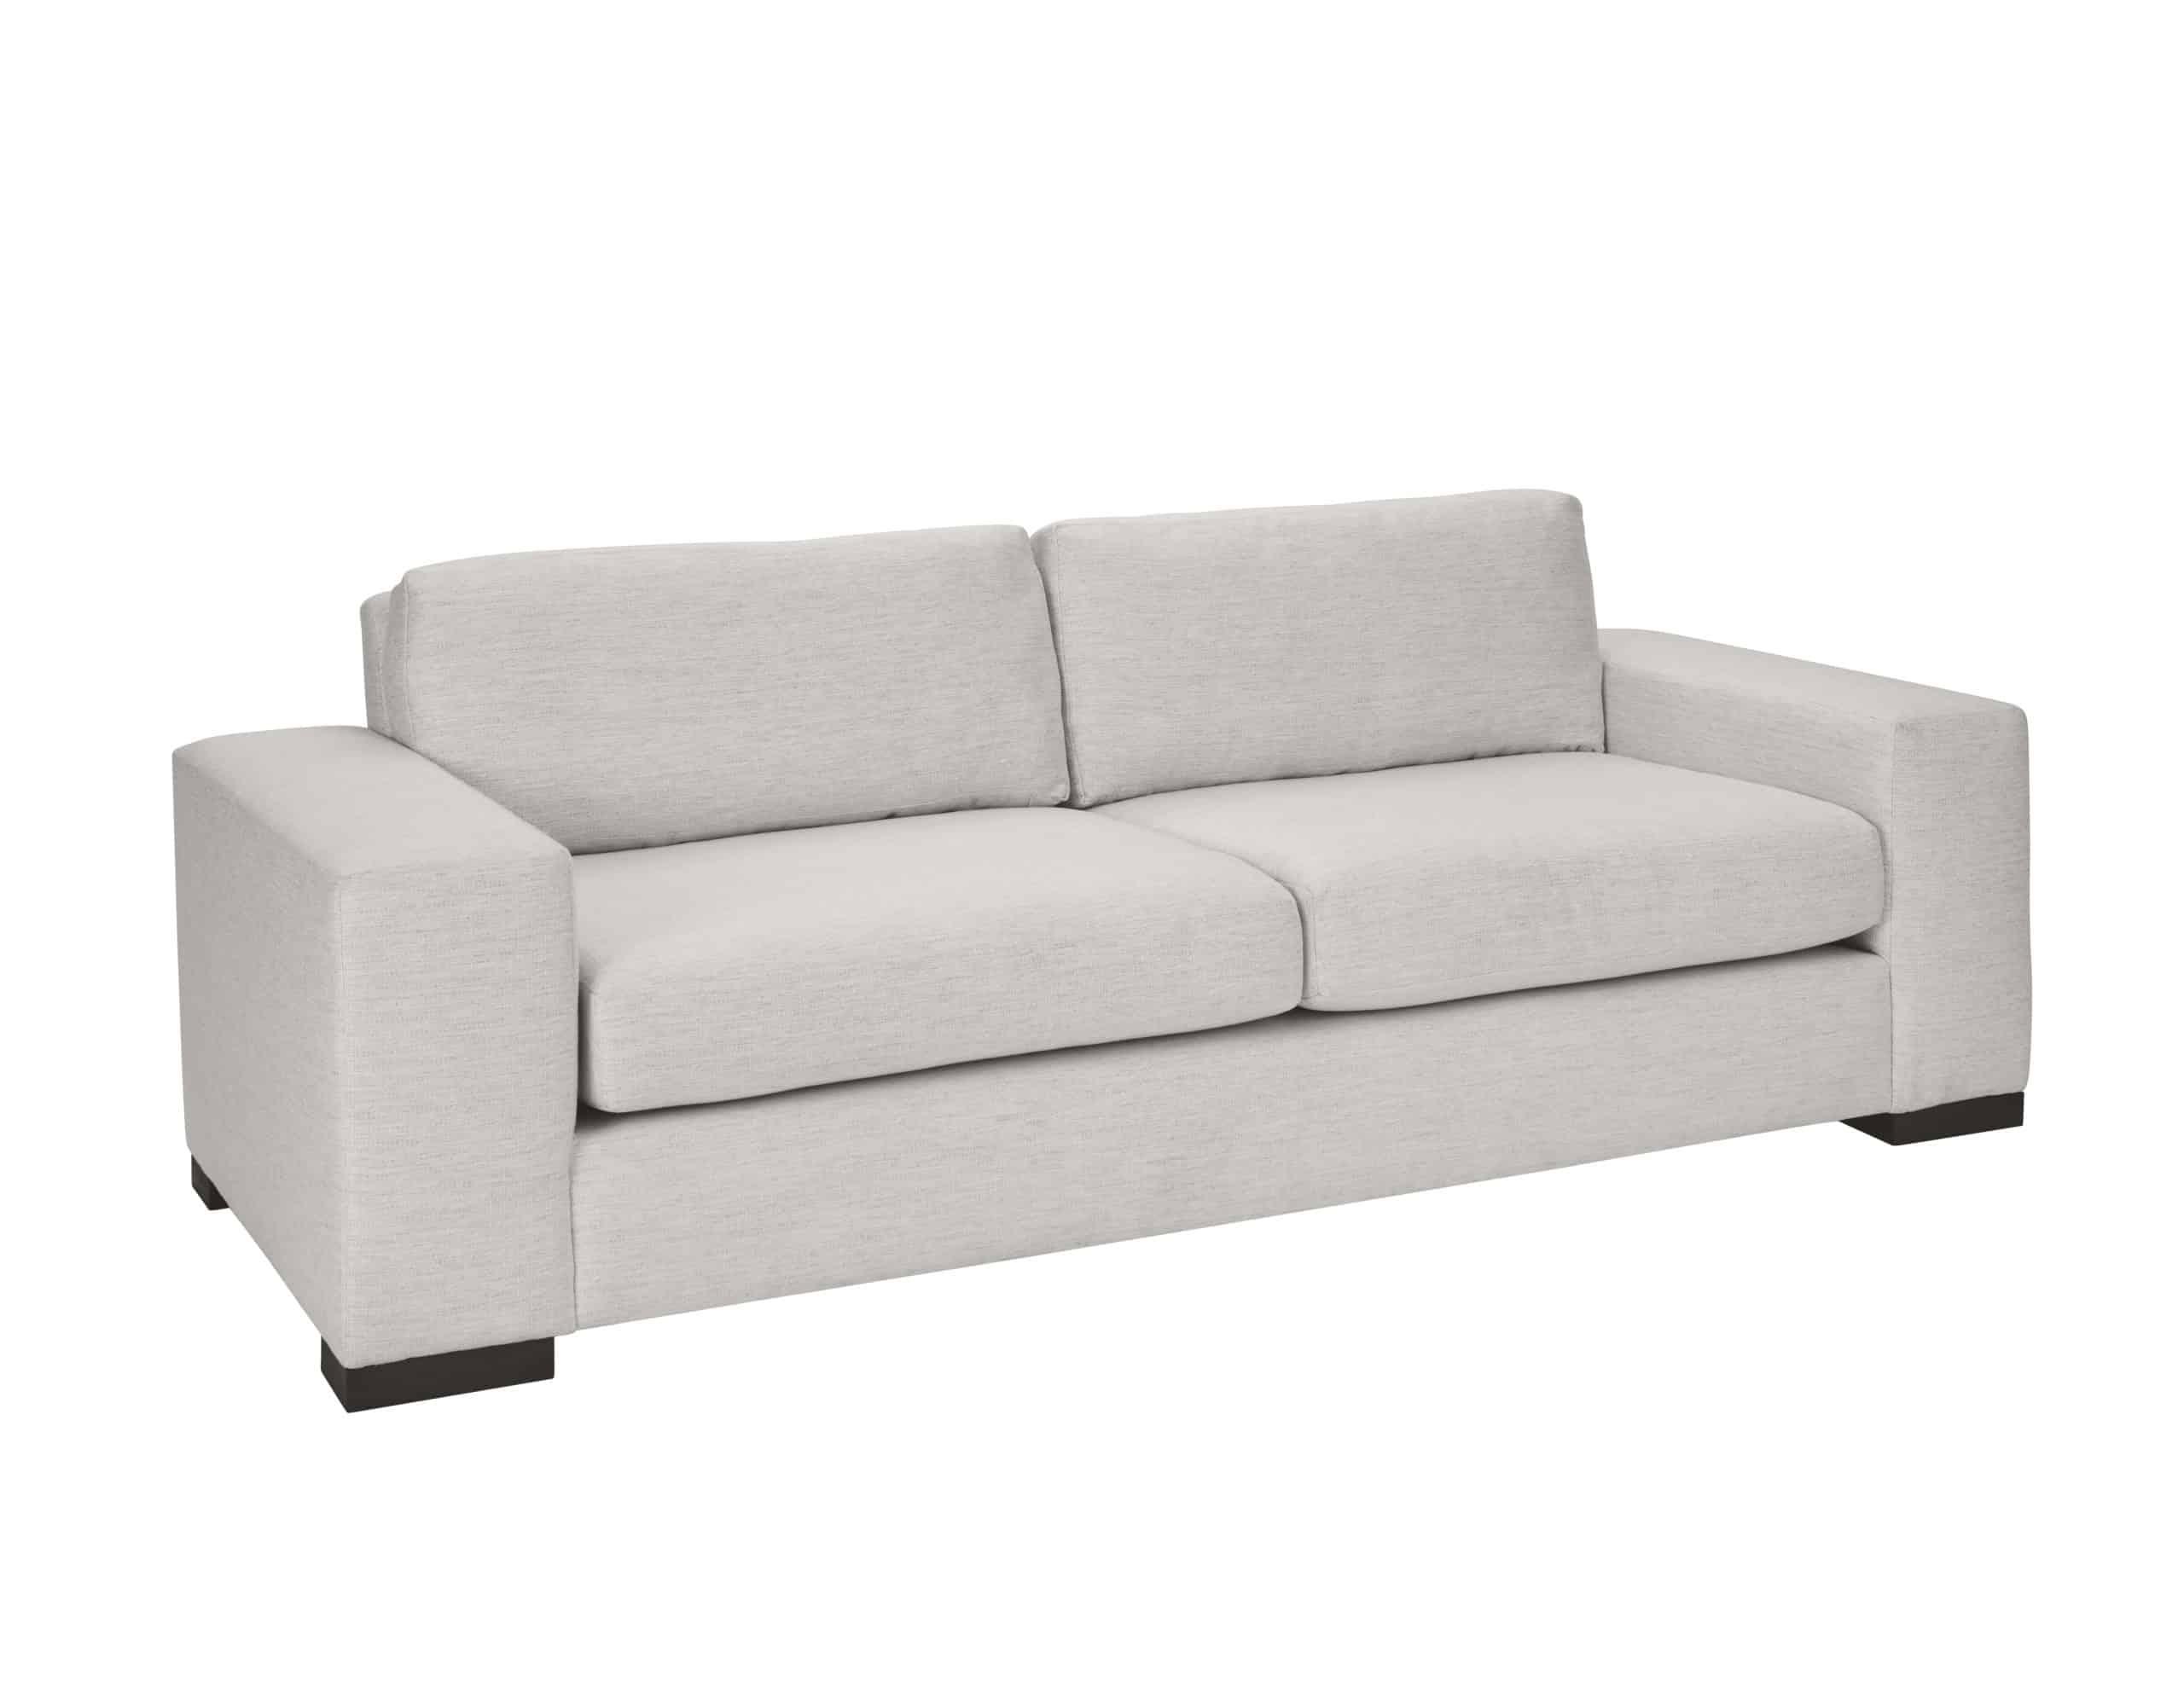 Contemporary, Modern Sofa 773501-5015FX 773501-5015FX in White 